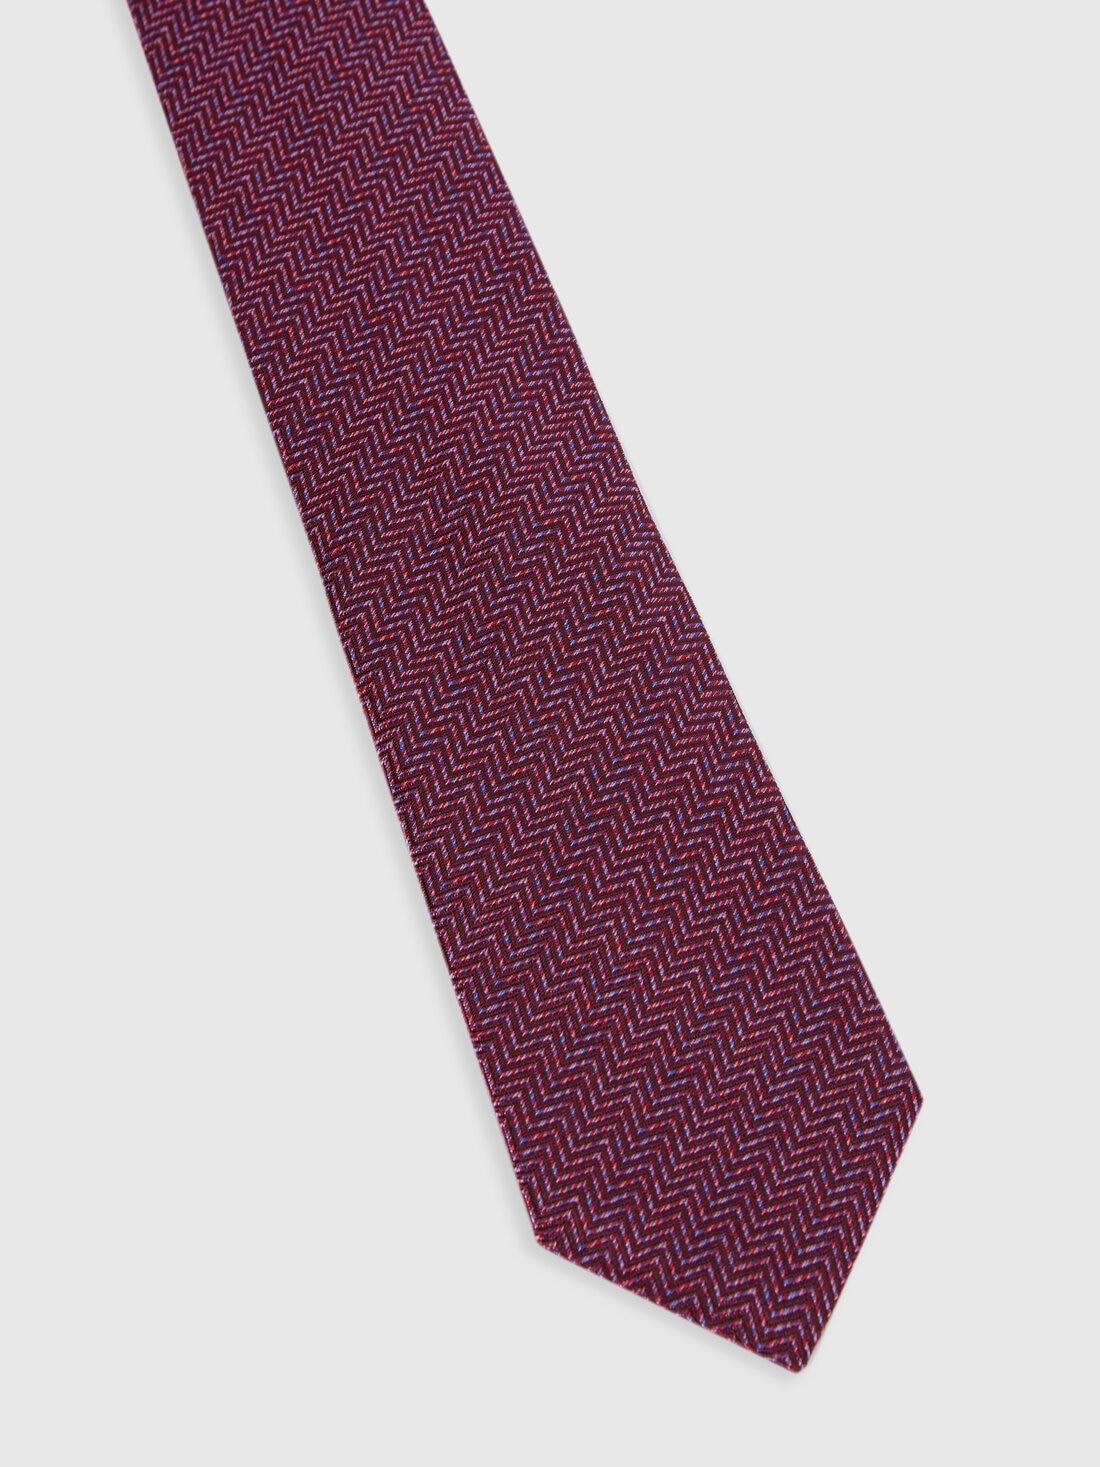 Cravate en soie à chevrons, Multicolore  - 8053147141947 - 1